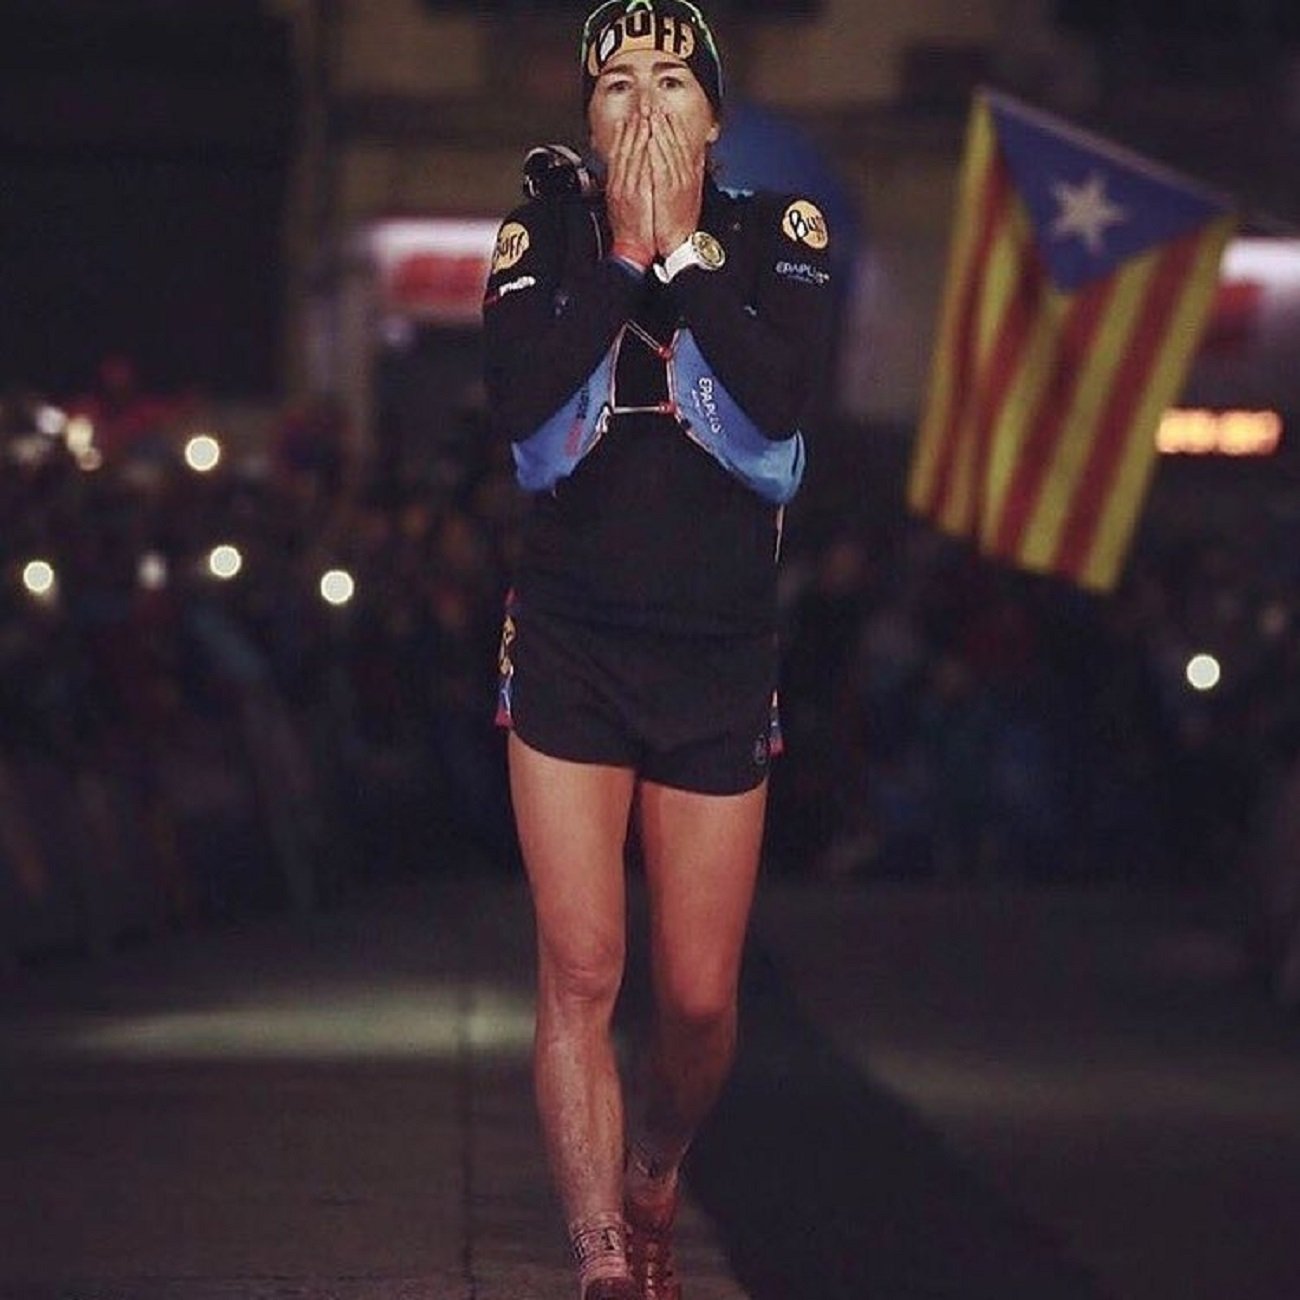 La ultraatleta catalana Núria Picas cataloga de "farsa" y "vergüenza" el juicio al procés